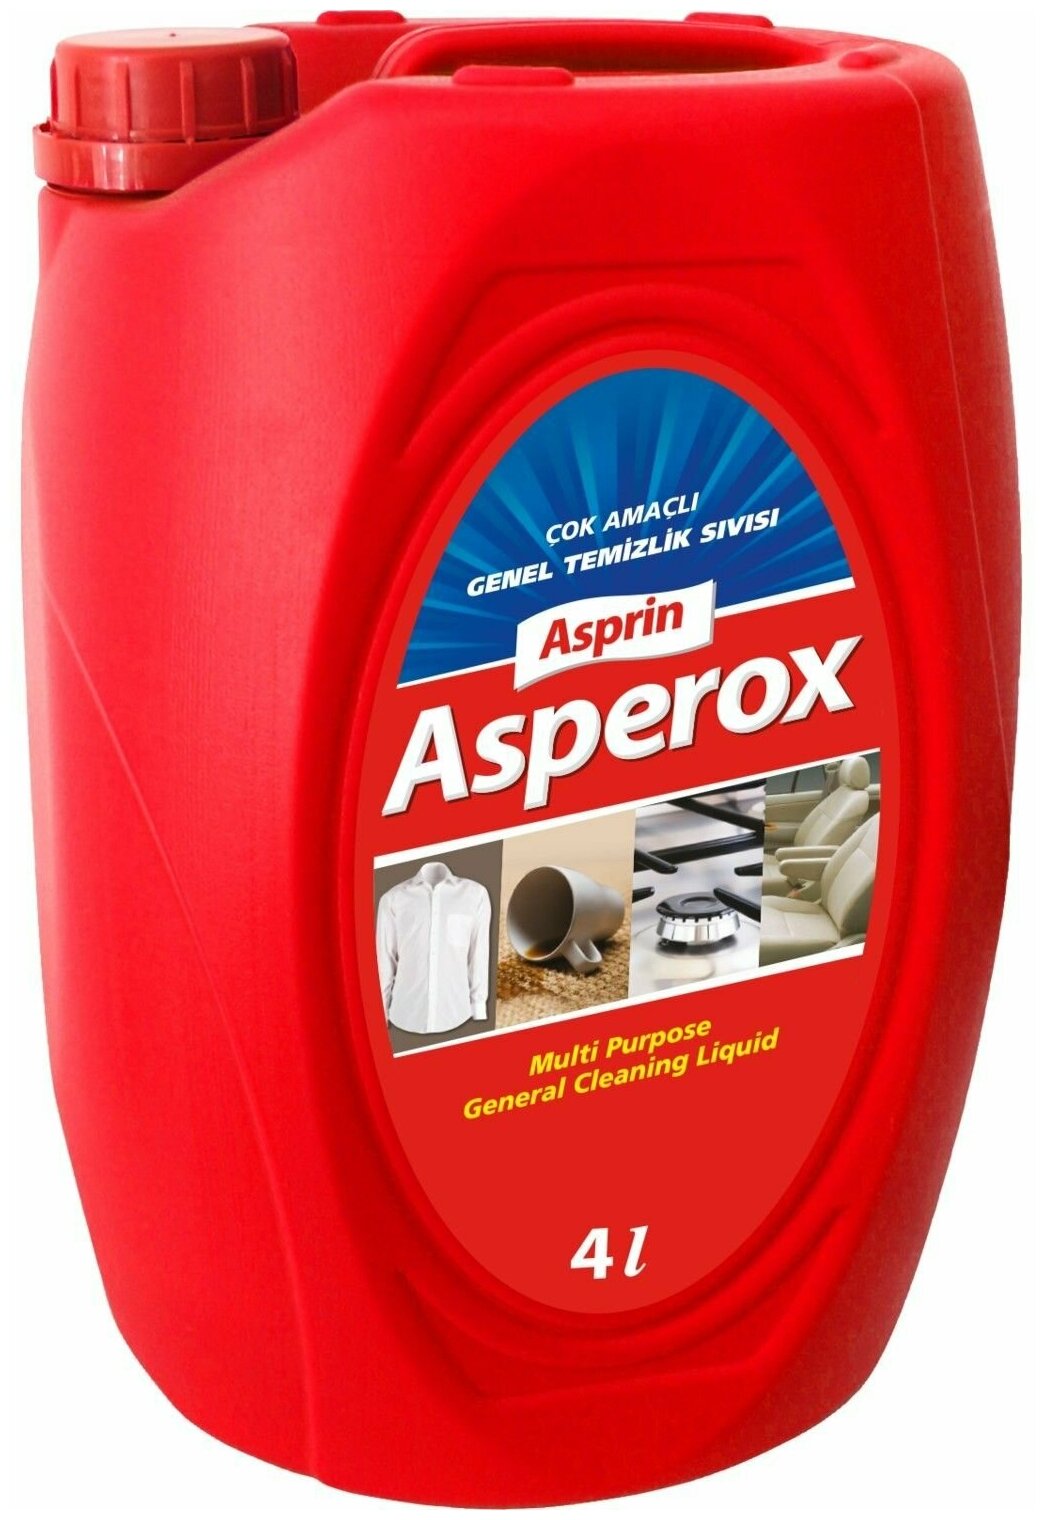 Универсальное чистящее средство для кухни, ковров, салона автомобиля, пятновыводитель для белья Asperox 4 л, Турция